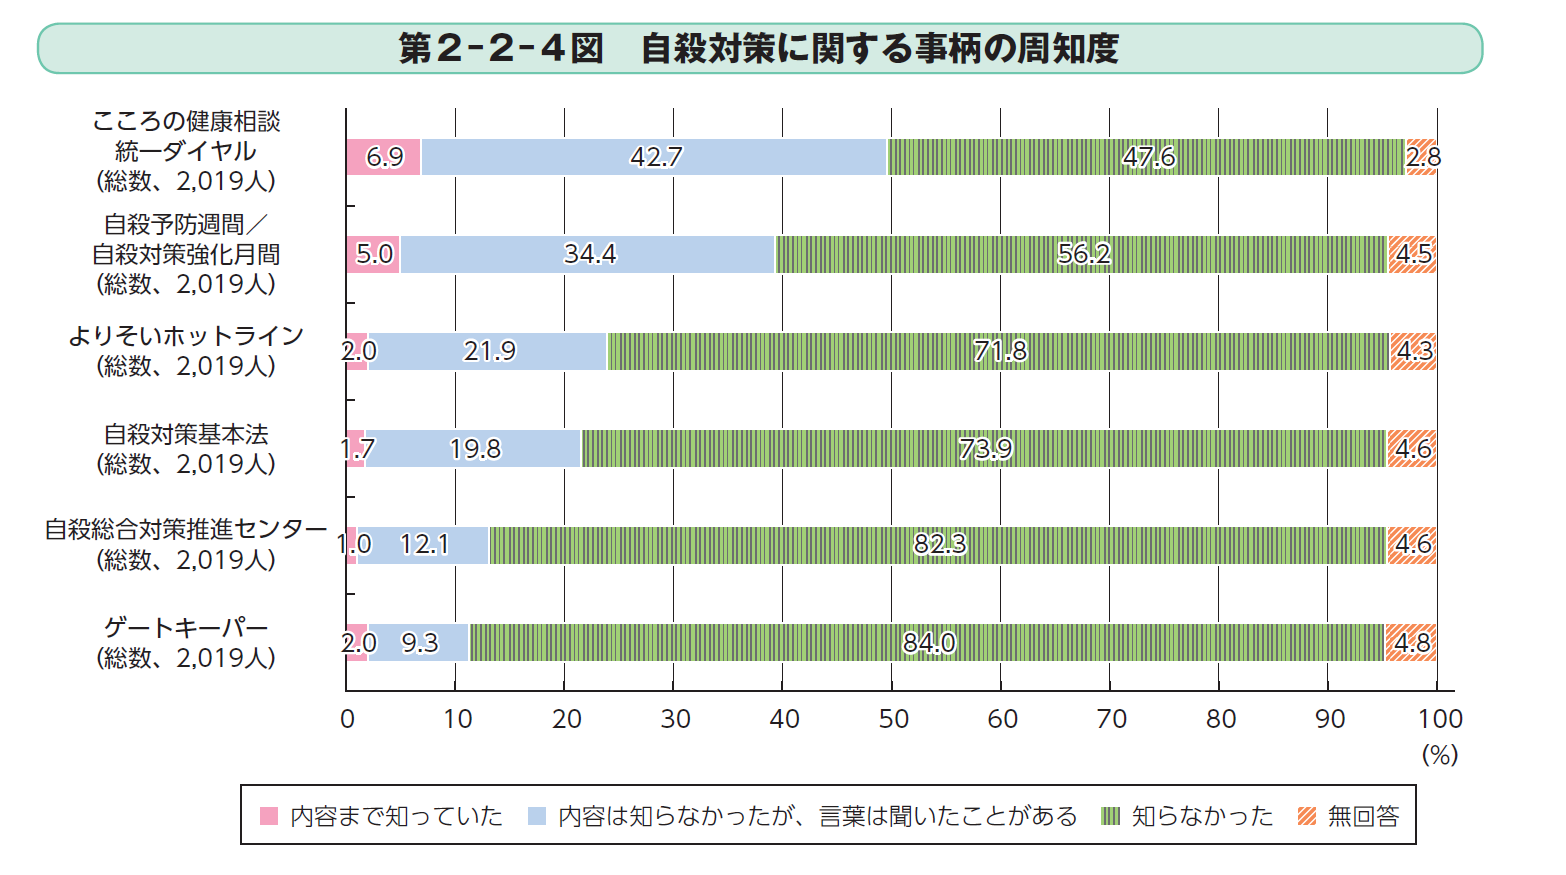 平成28年における職業別自殺者数の構成割合